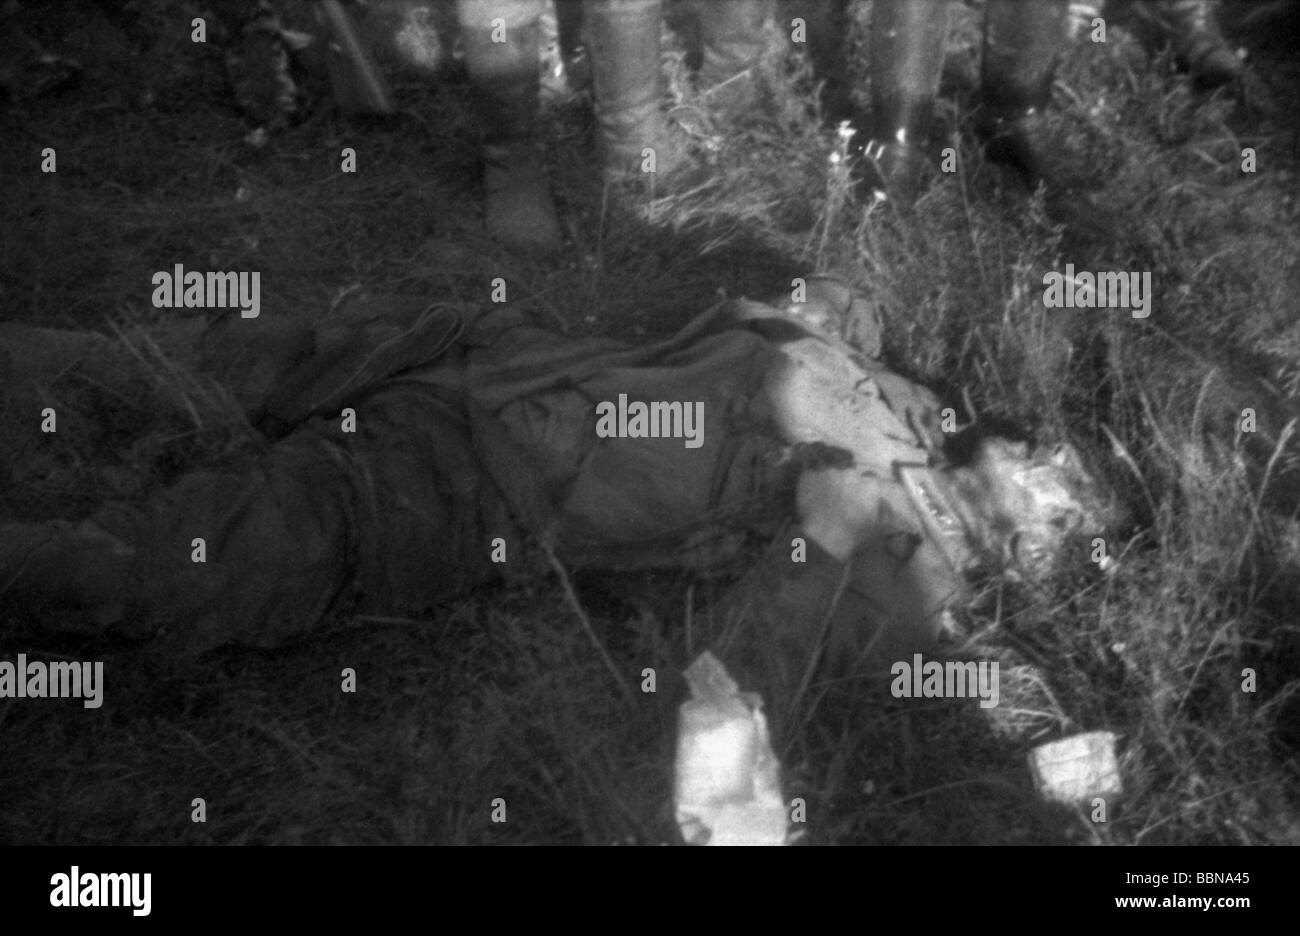 Événements, seconde Guerre mondiale / seconde Guerre mondiale, Russie, soldats tombés / corps morts, aviateur soviétique tombé, Dukhovshchina près de Smolensk, Russie, 26.7.1941, Banque D'Images